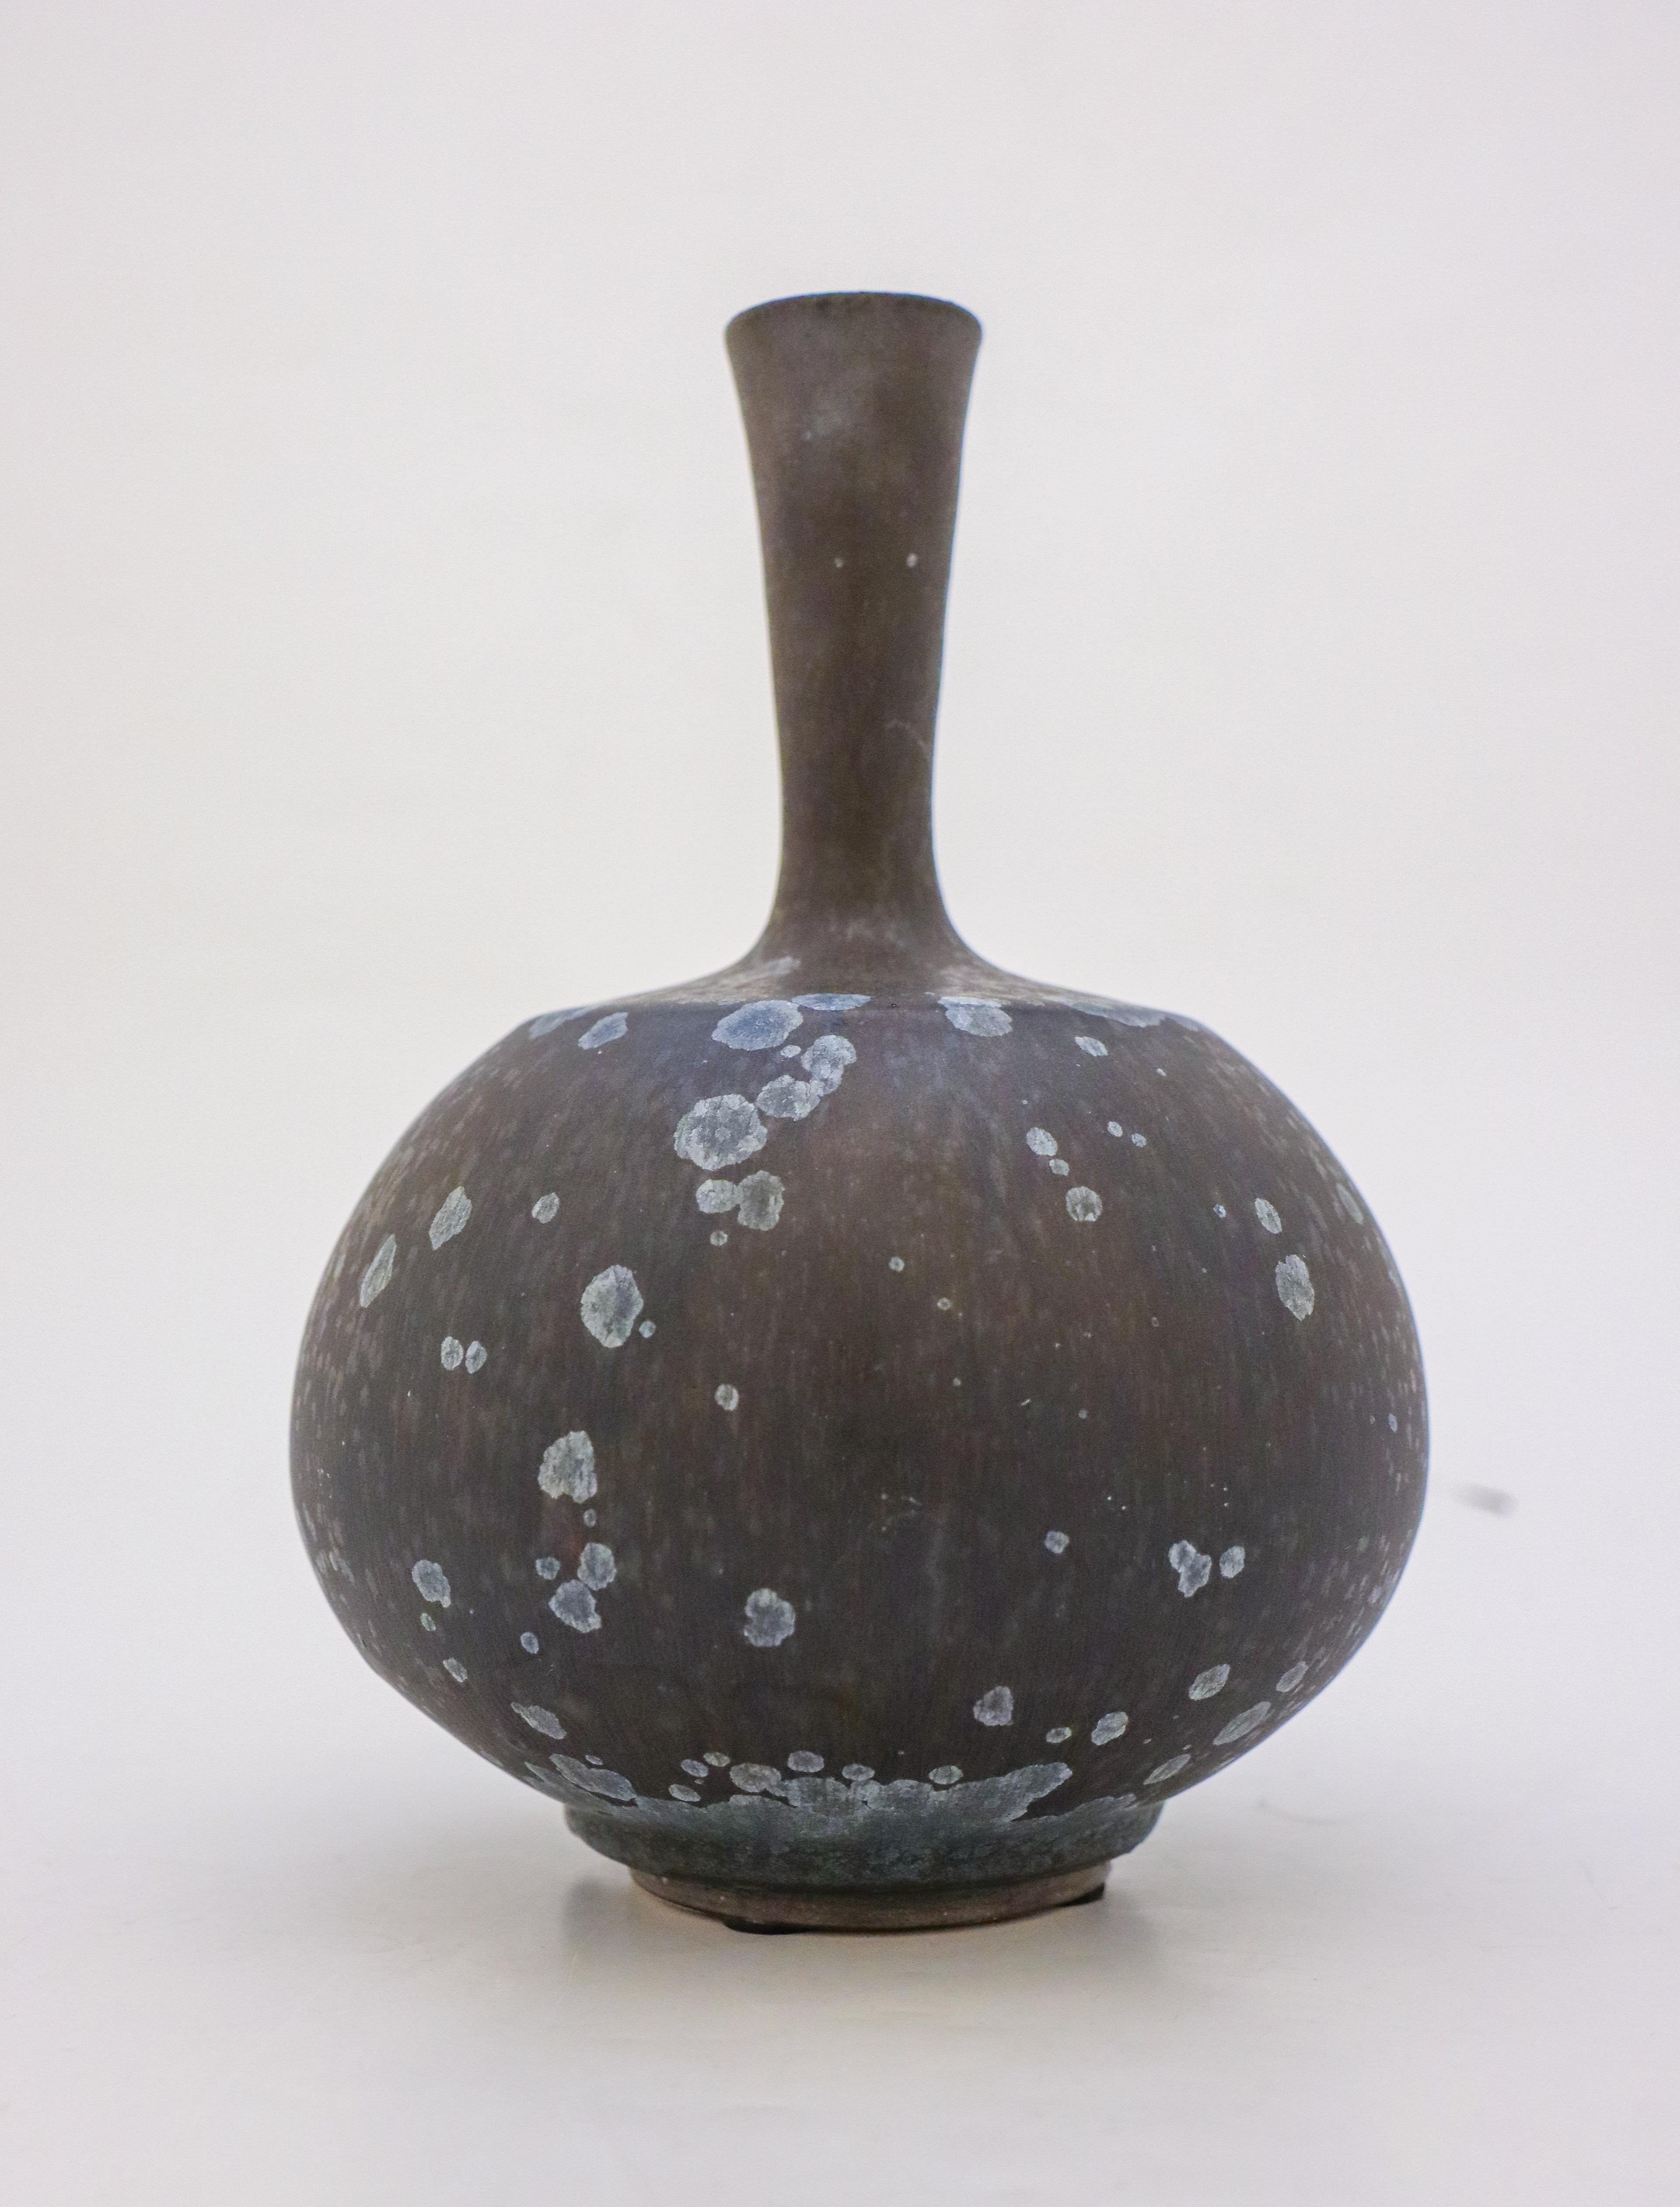 Scandinavian Modern Vase Dark Blue Black Crystalline Glaze Isak Isaksson Contemporary Sweden Ceramic